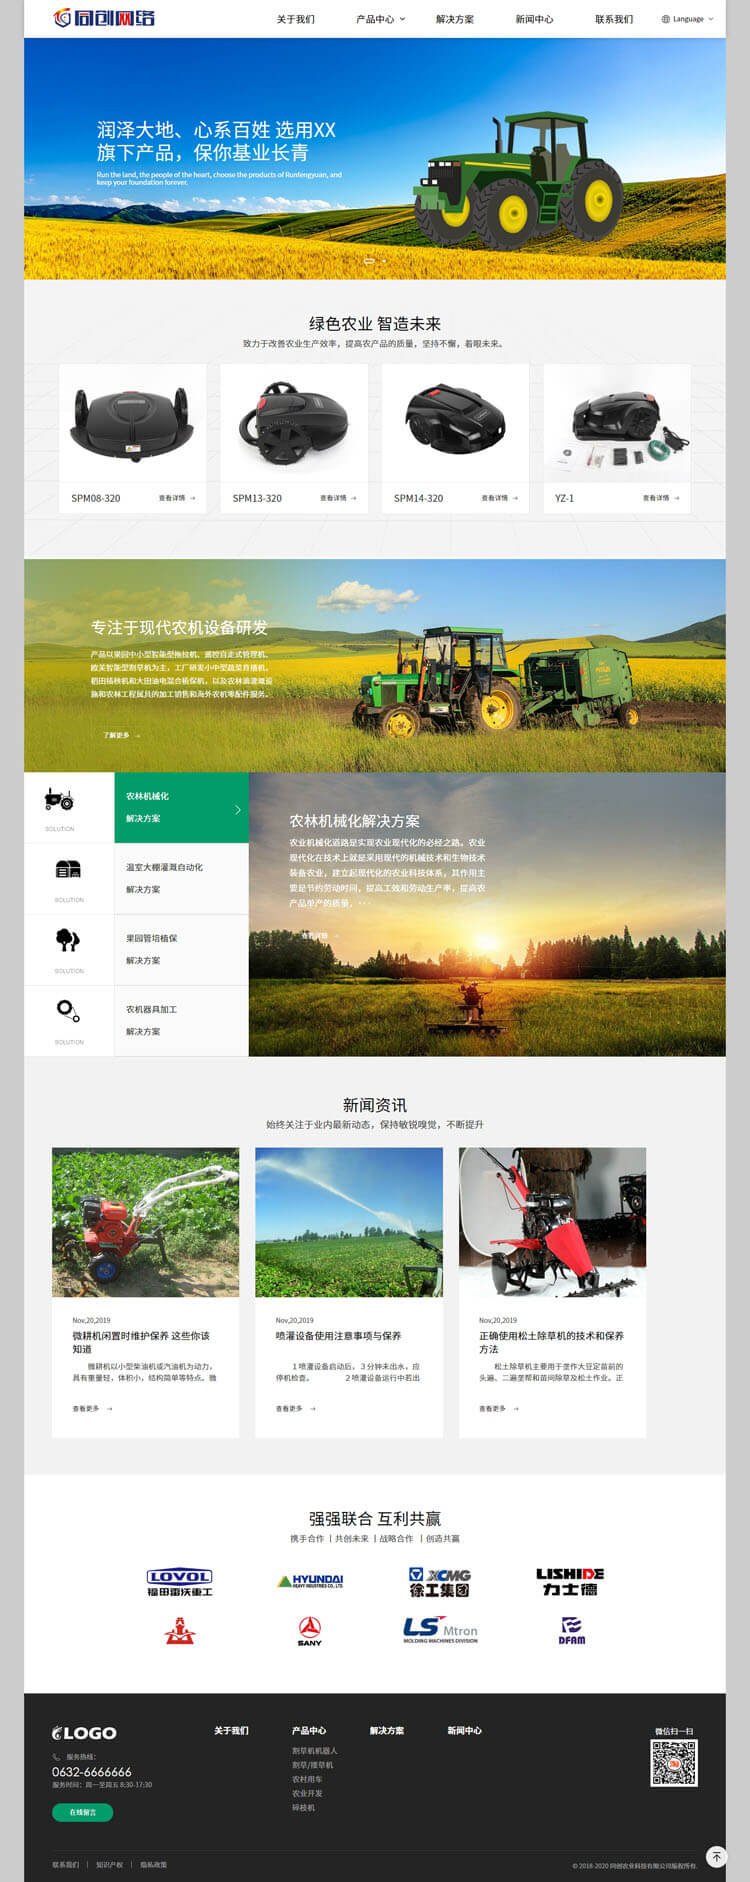 农业机械中英日三语企业网站源码程序-EN012-2